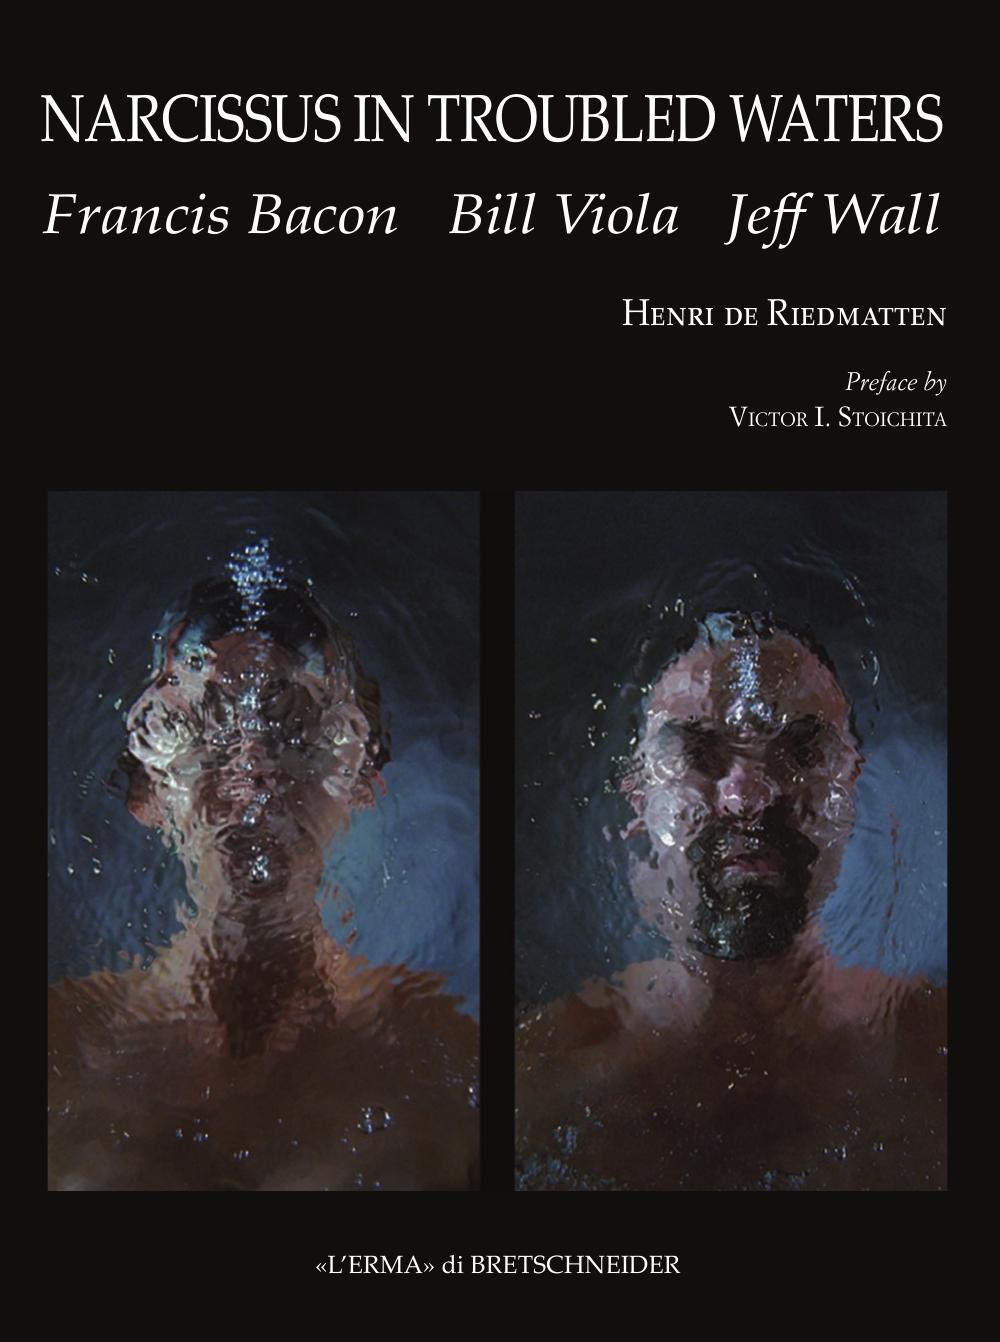 Narcissus in Troubled Waters: Francis Bacon, Bill Viola, Jeff Wall by Henri de Riedmatten